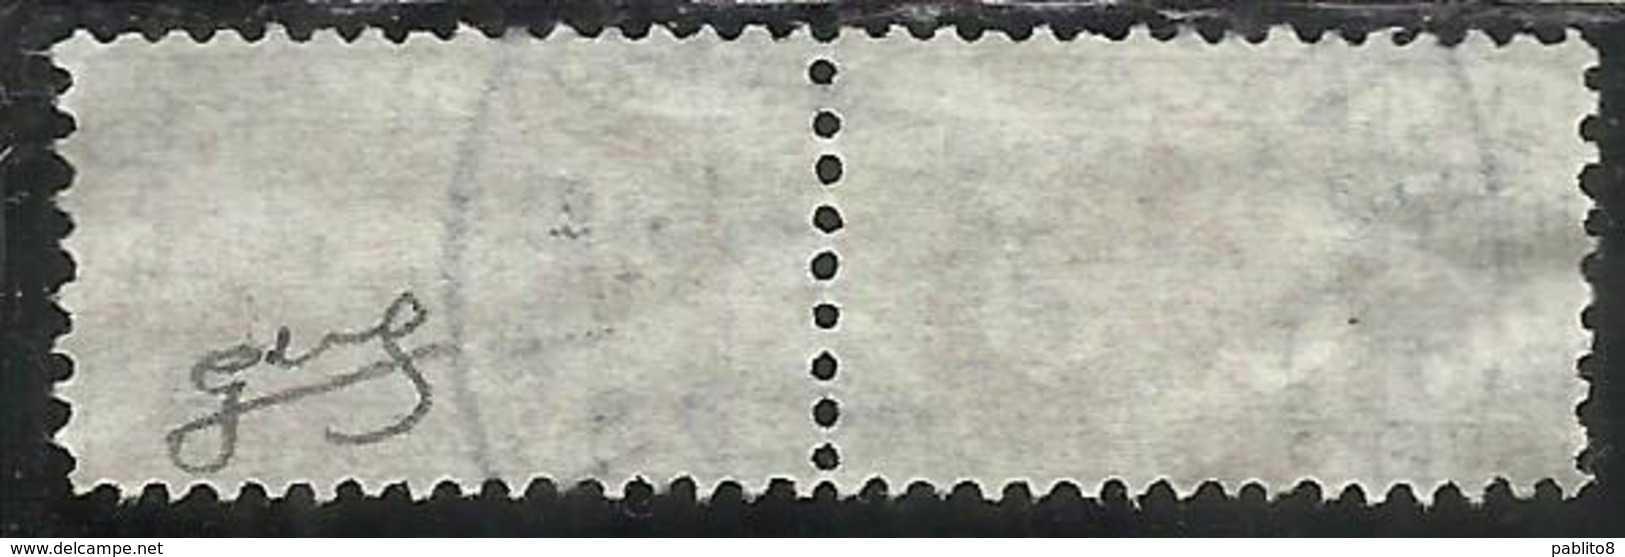 ITALY KINGDOM ITALIA REGNO 1945 LUOGOTENENZA PACCHI POSTALI SENZA FREGIO LIRE 20 USATO USED OBLITERE' FIRMATO SIGNED - Colis-postaux